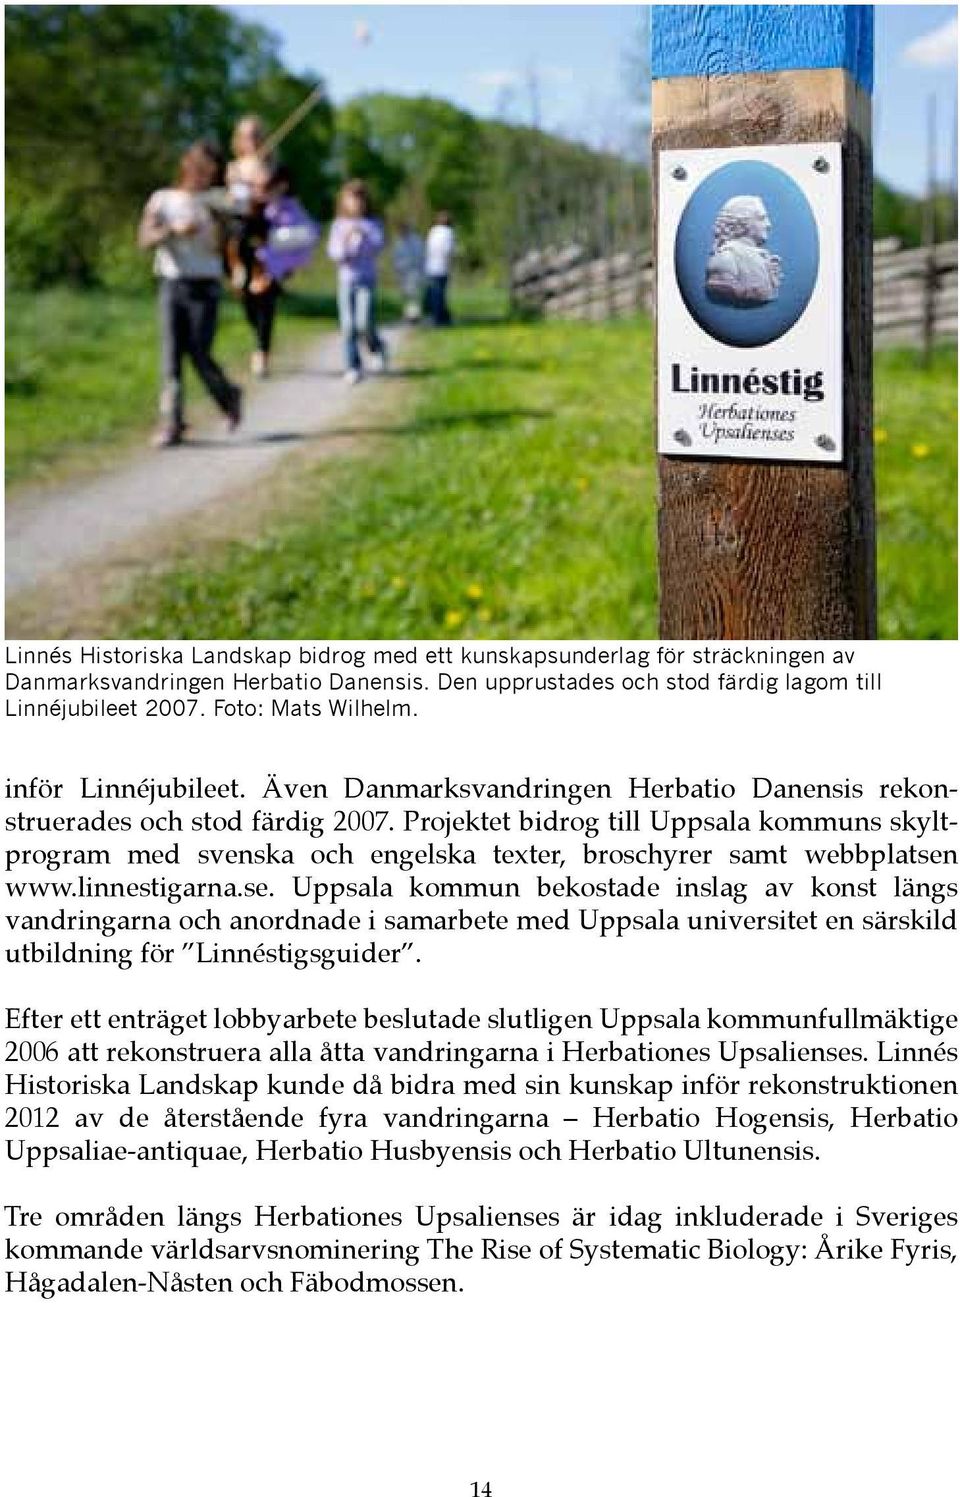 Projektet bidrog till Uppsala kommuns skyltprogram med svenska och engelska texter, broschyrer samt webbplatsen